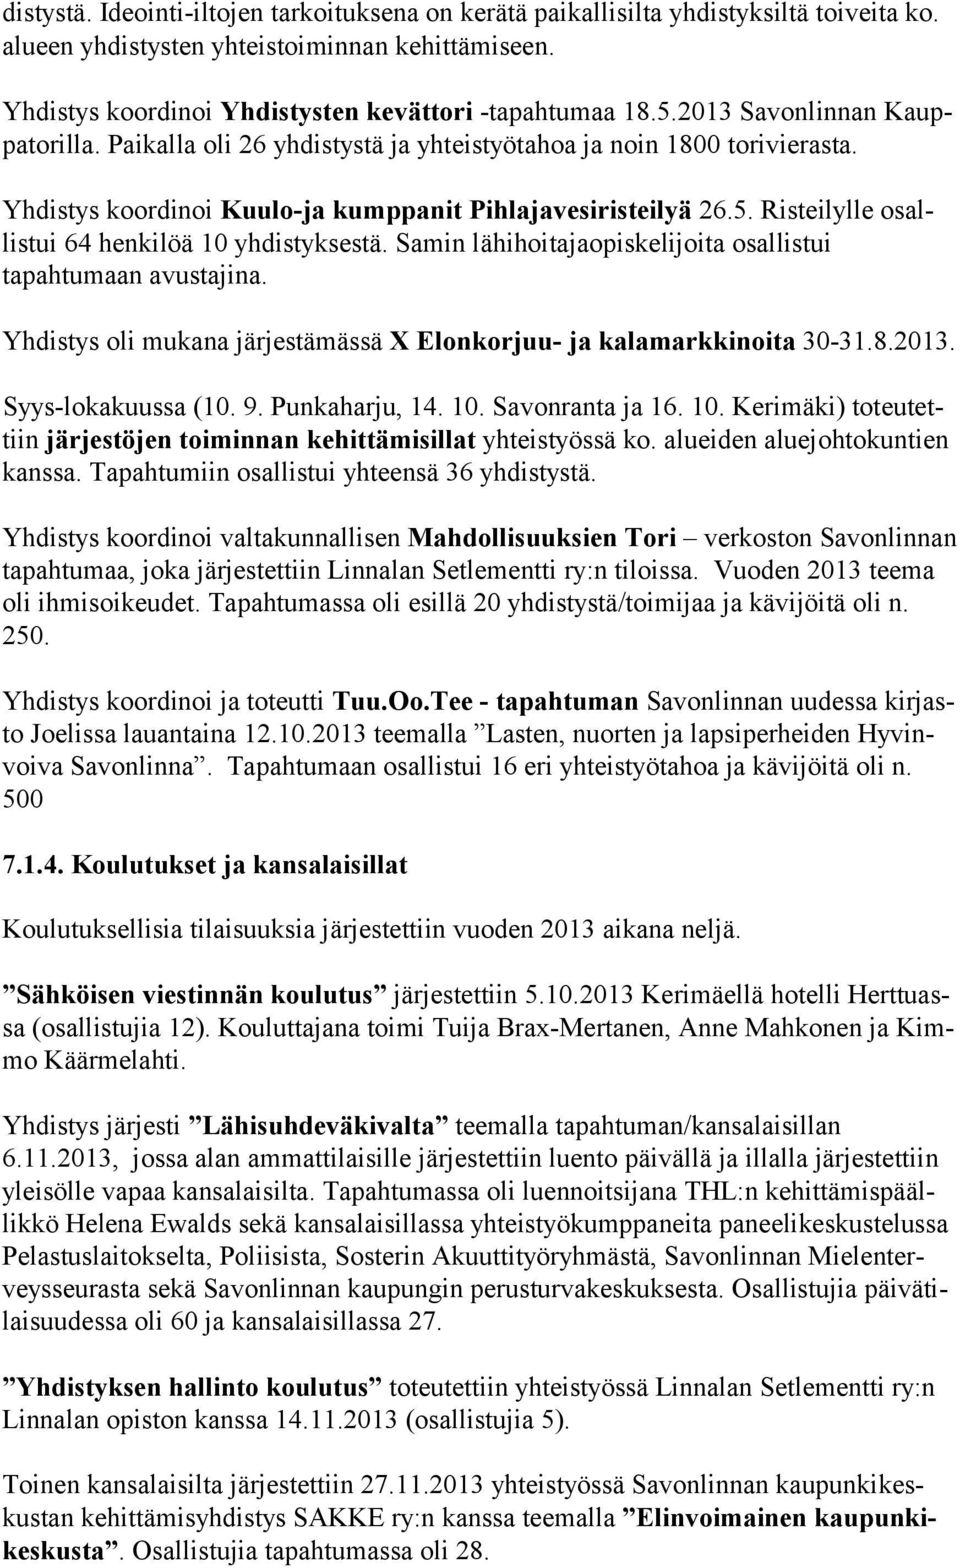 Risteilylle osallistui 64 henkilöä 10 yhdistyksestä. Samin lähihoitajaopiskelijoita osallistui tapahtumaan avustajina. Yhdistys oli mukana järjestämässä X Elonkorjuu- ja kalamarkkinoita 30-31.8.2013.